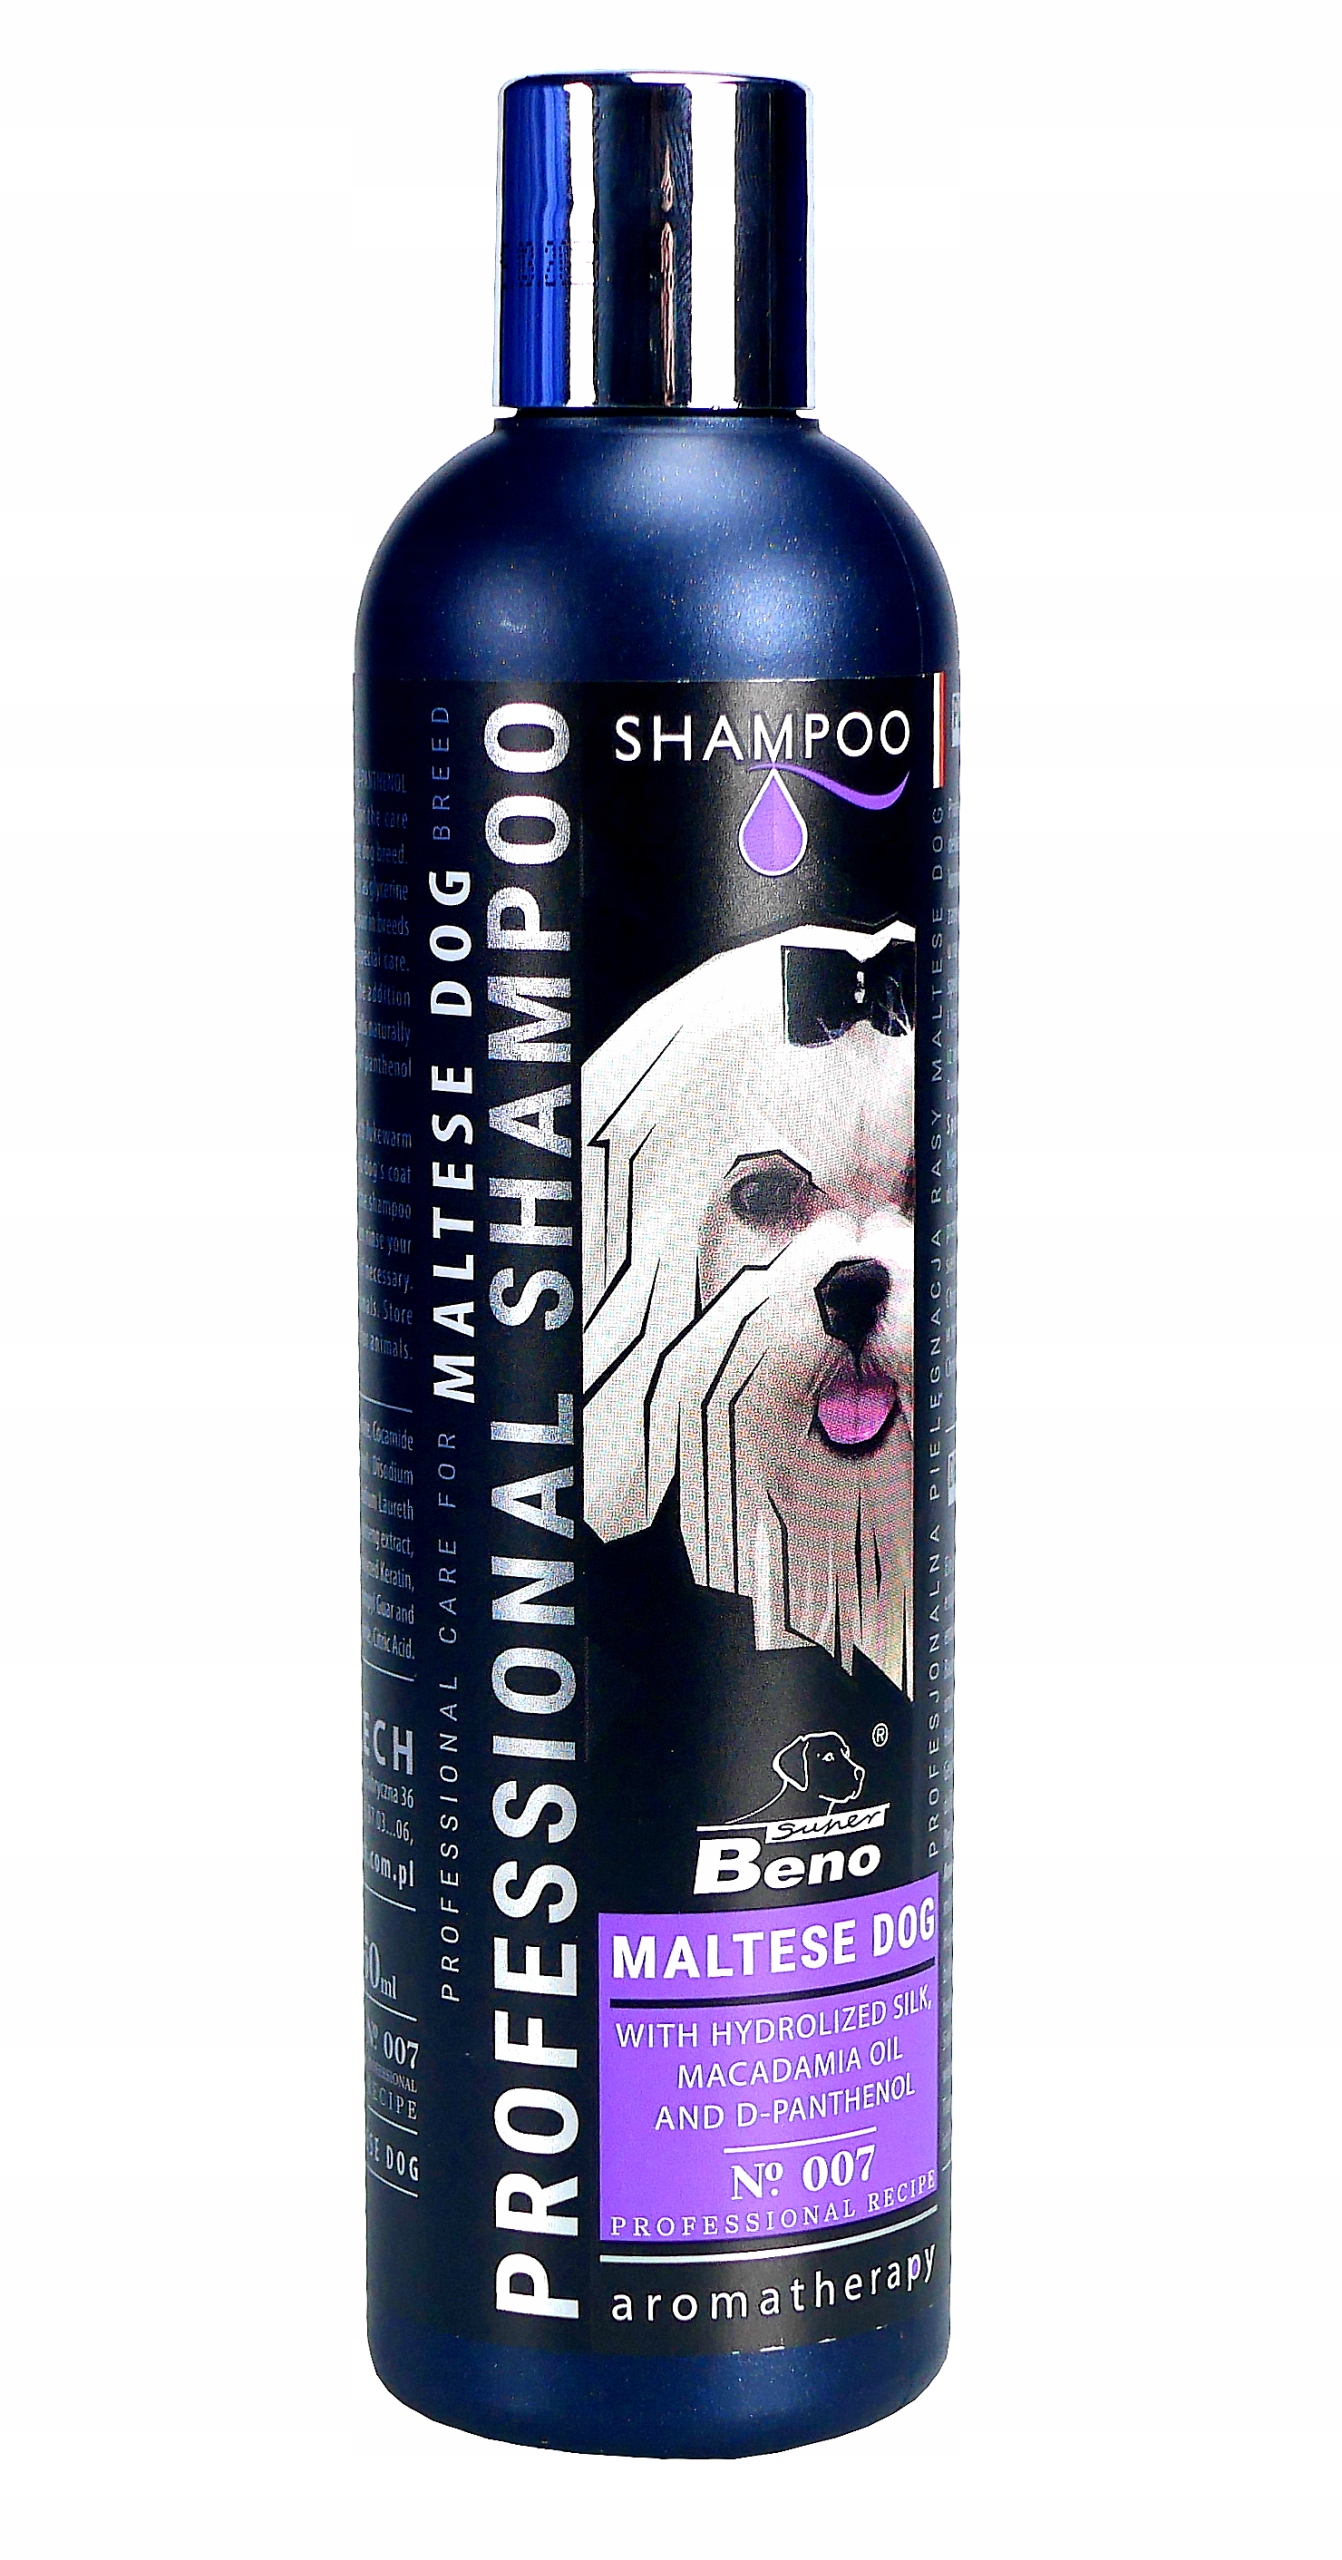 profesjonalny szampon dla psa 4l